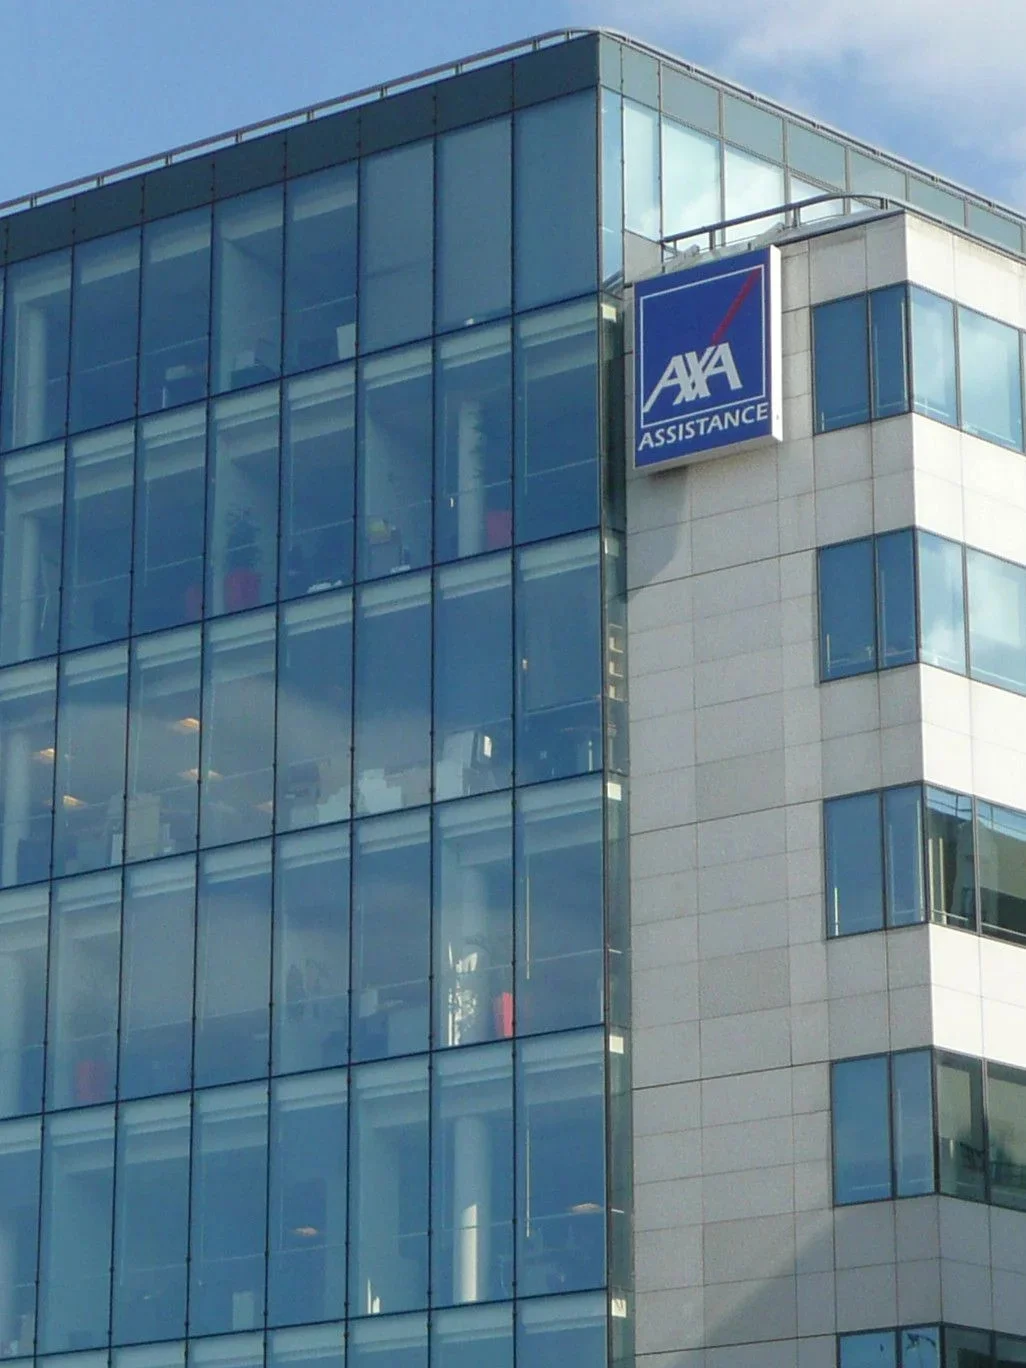 AXA Assistance's call center.